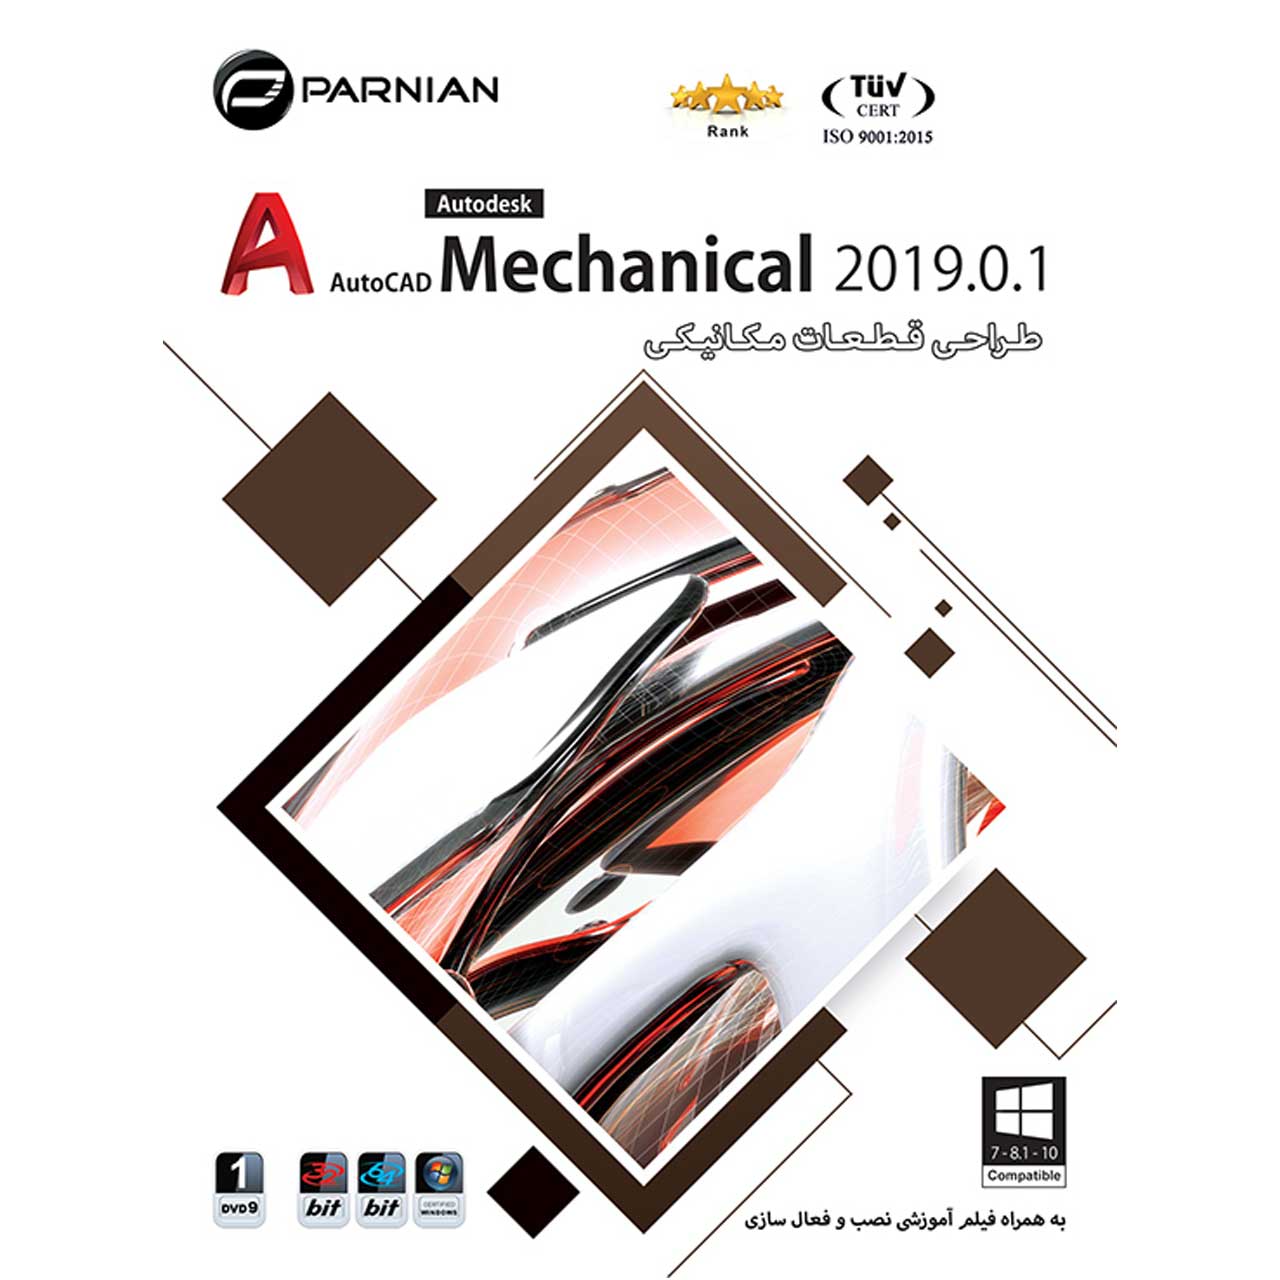 نرم افزار طـراحـی قـطـعـات مـکـانیـکـی AutoCAD Mechanical 2019.0.1 نشر پرنیان